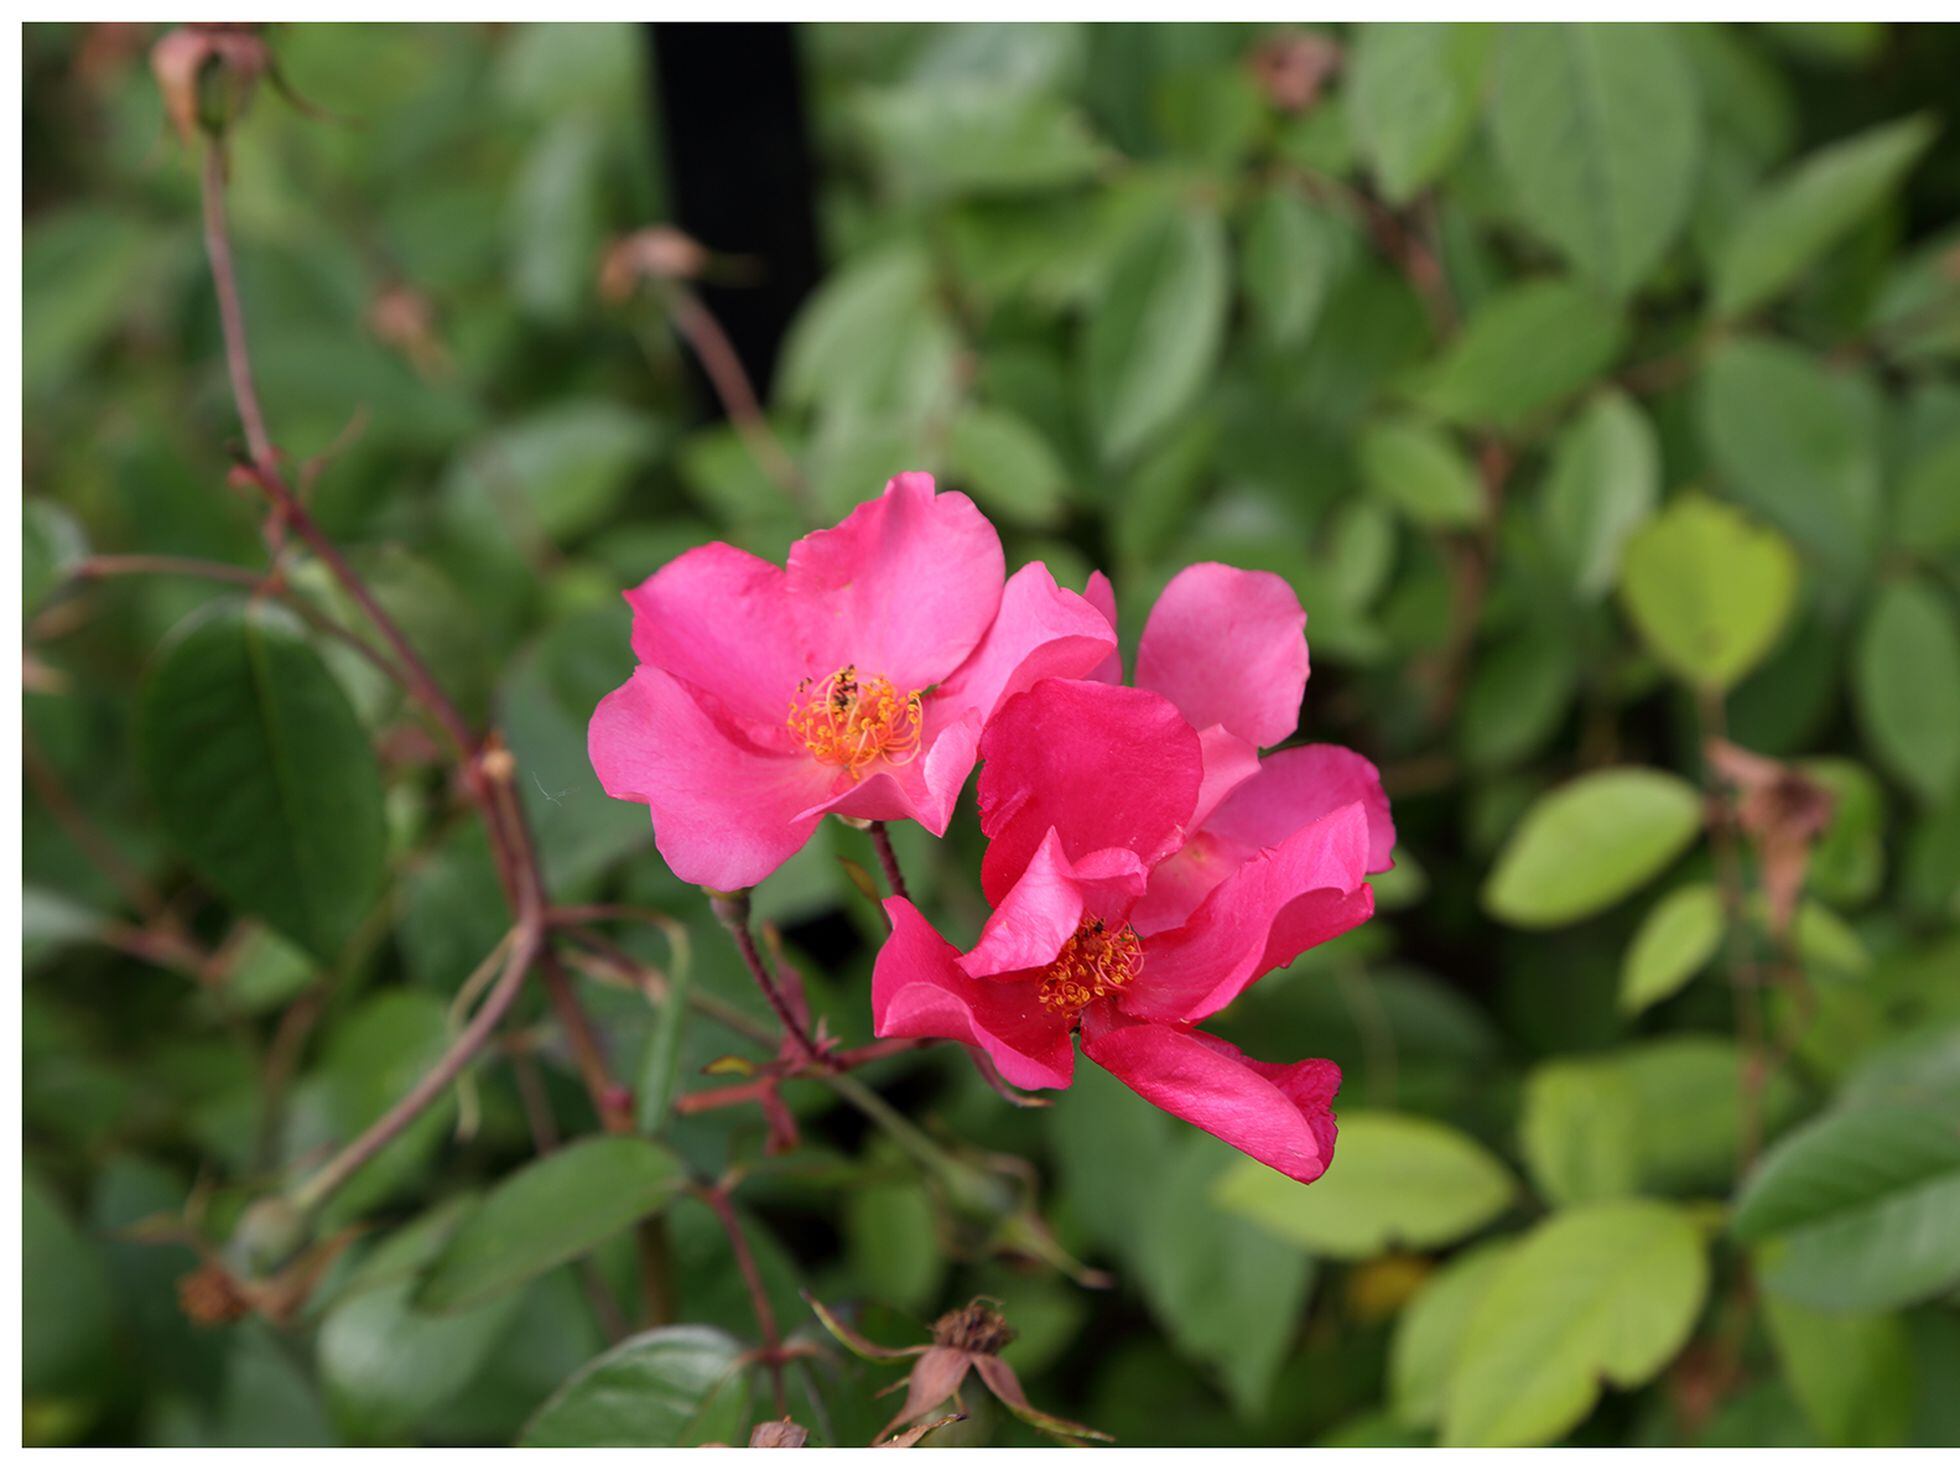 La rosa 'Mutabilis', el misterio de una flor que cambia de color | Estilo  de vida | EL PAÍS